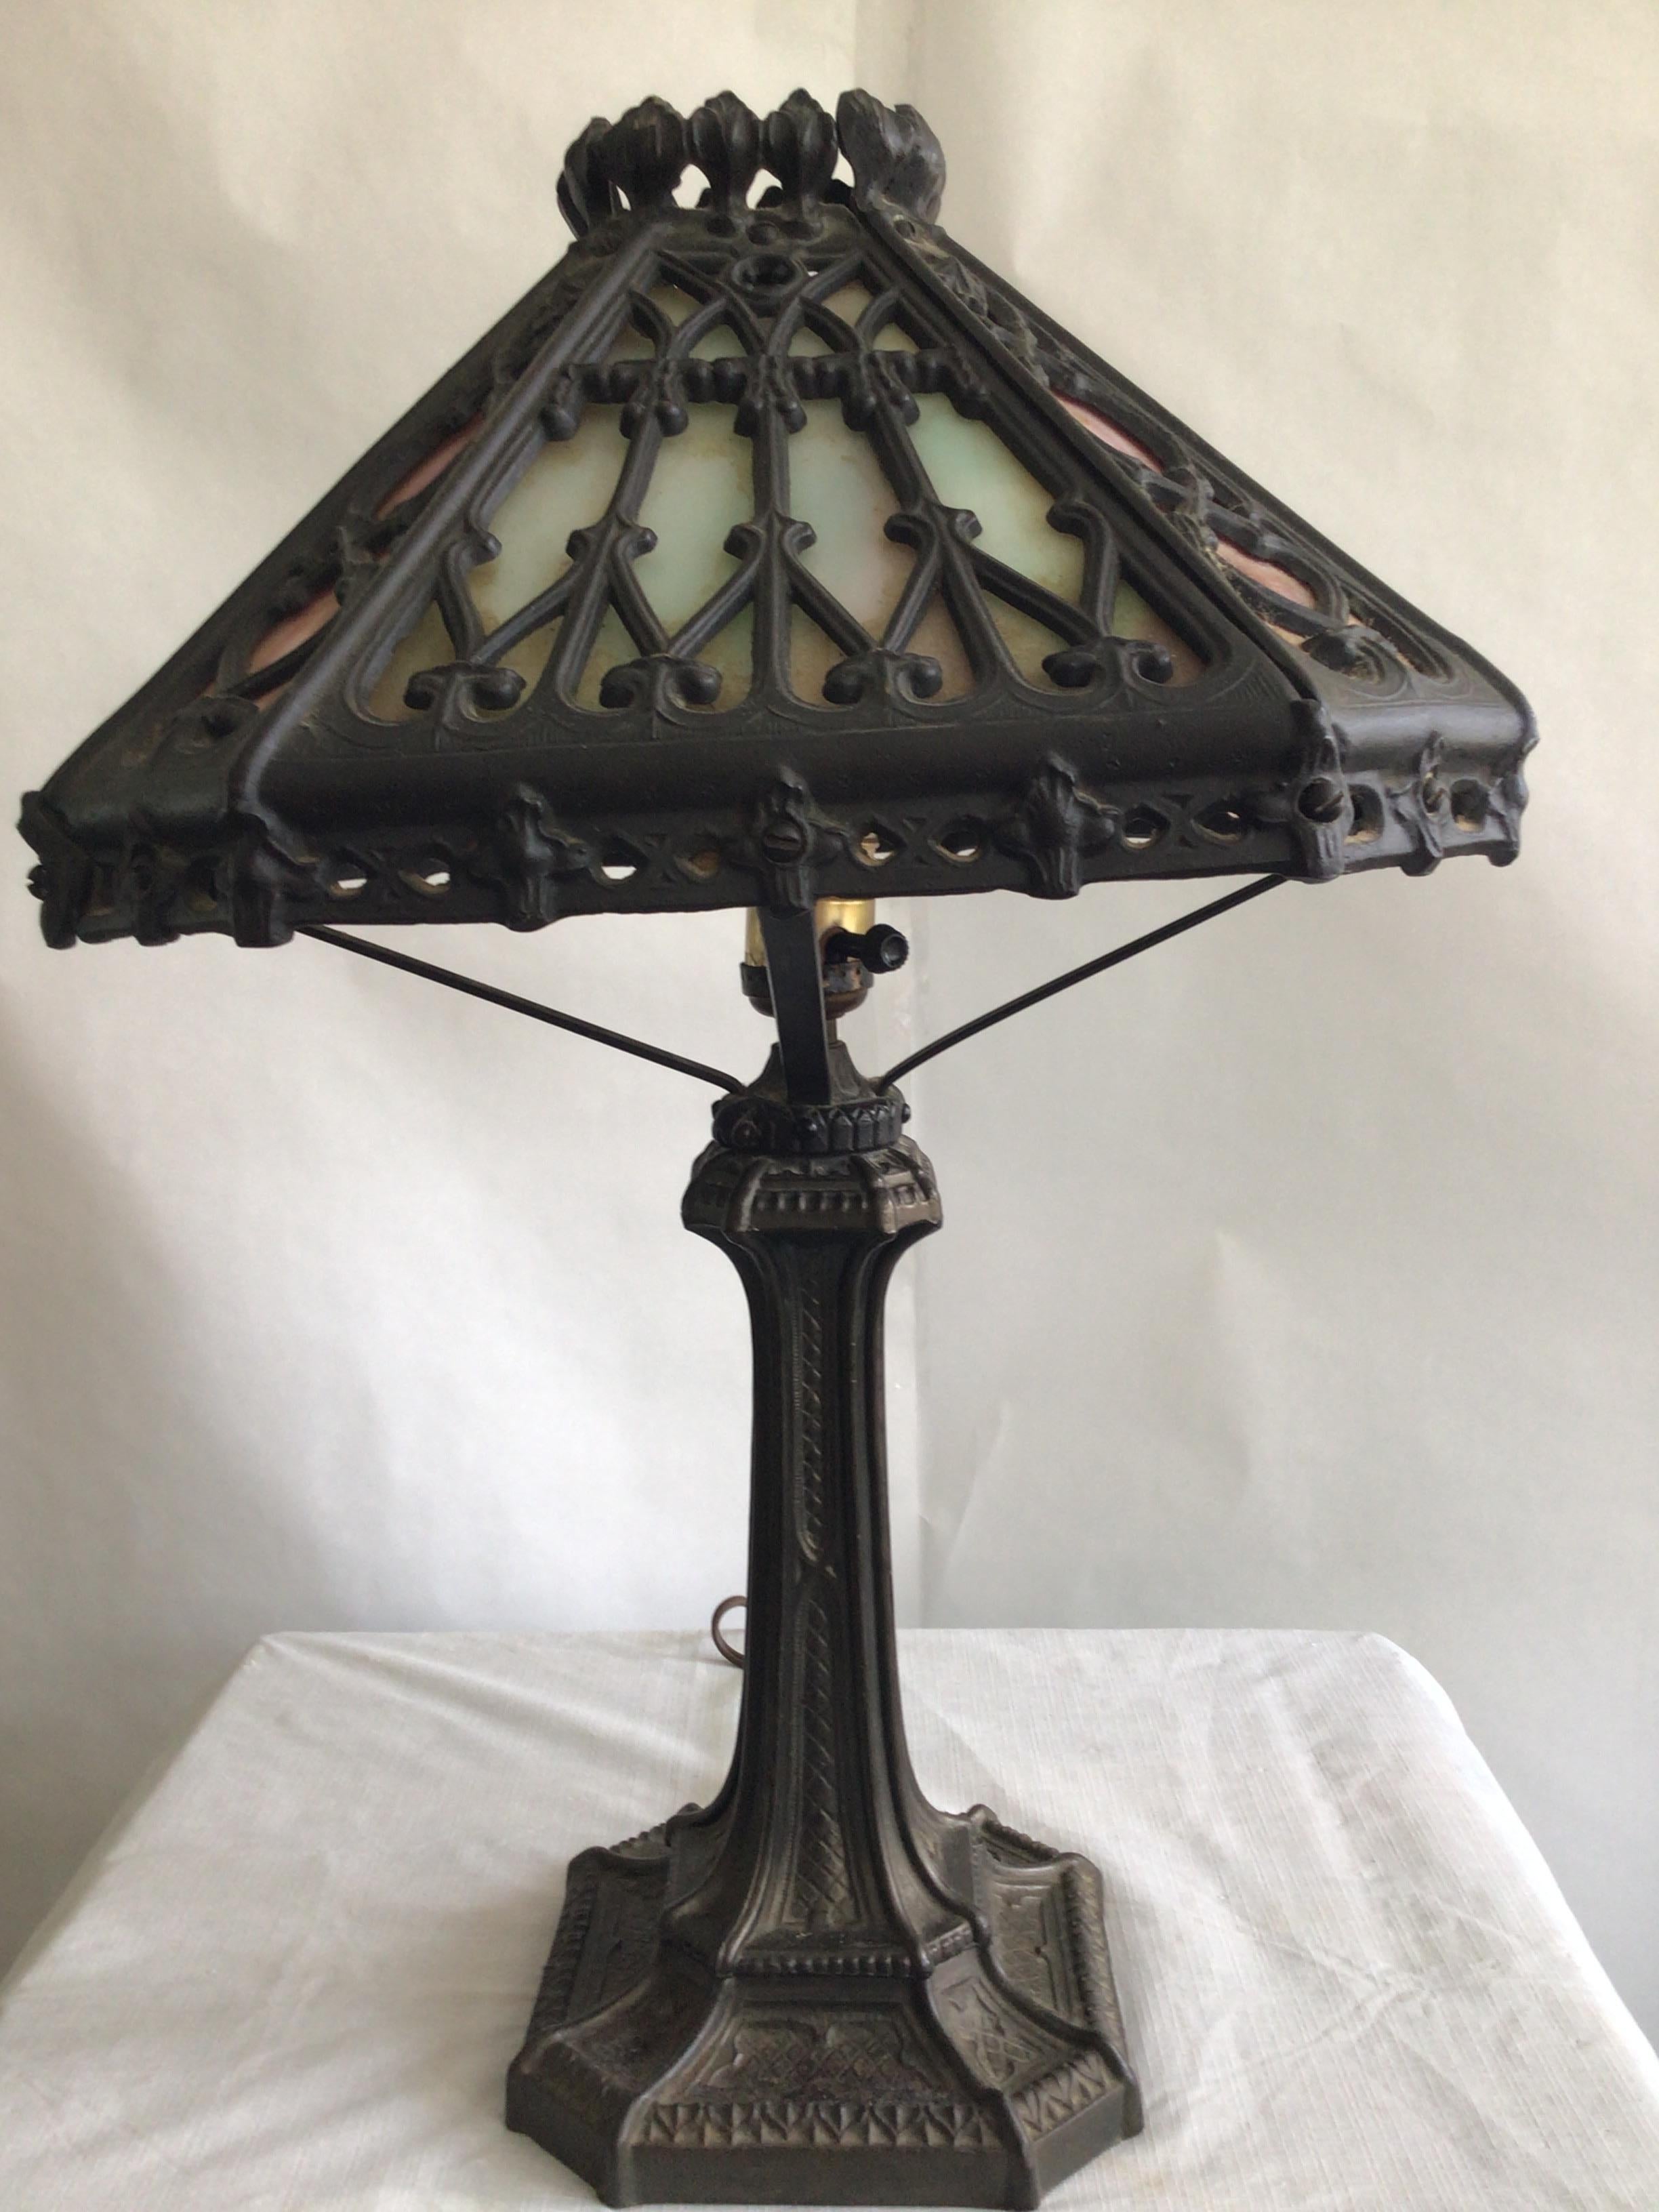 Lampe de table ornée en fer plombé 1920
Hauteur au sommet de l'abat-jour
Vitrail vert menthe et rose
Besoin d'un recâblage
L'abat-jour s'incline un peu - à ajuster